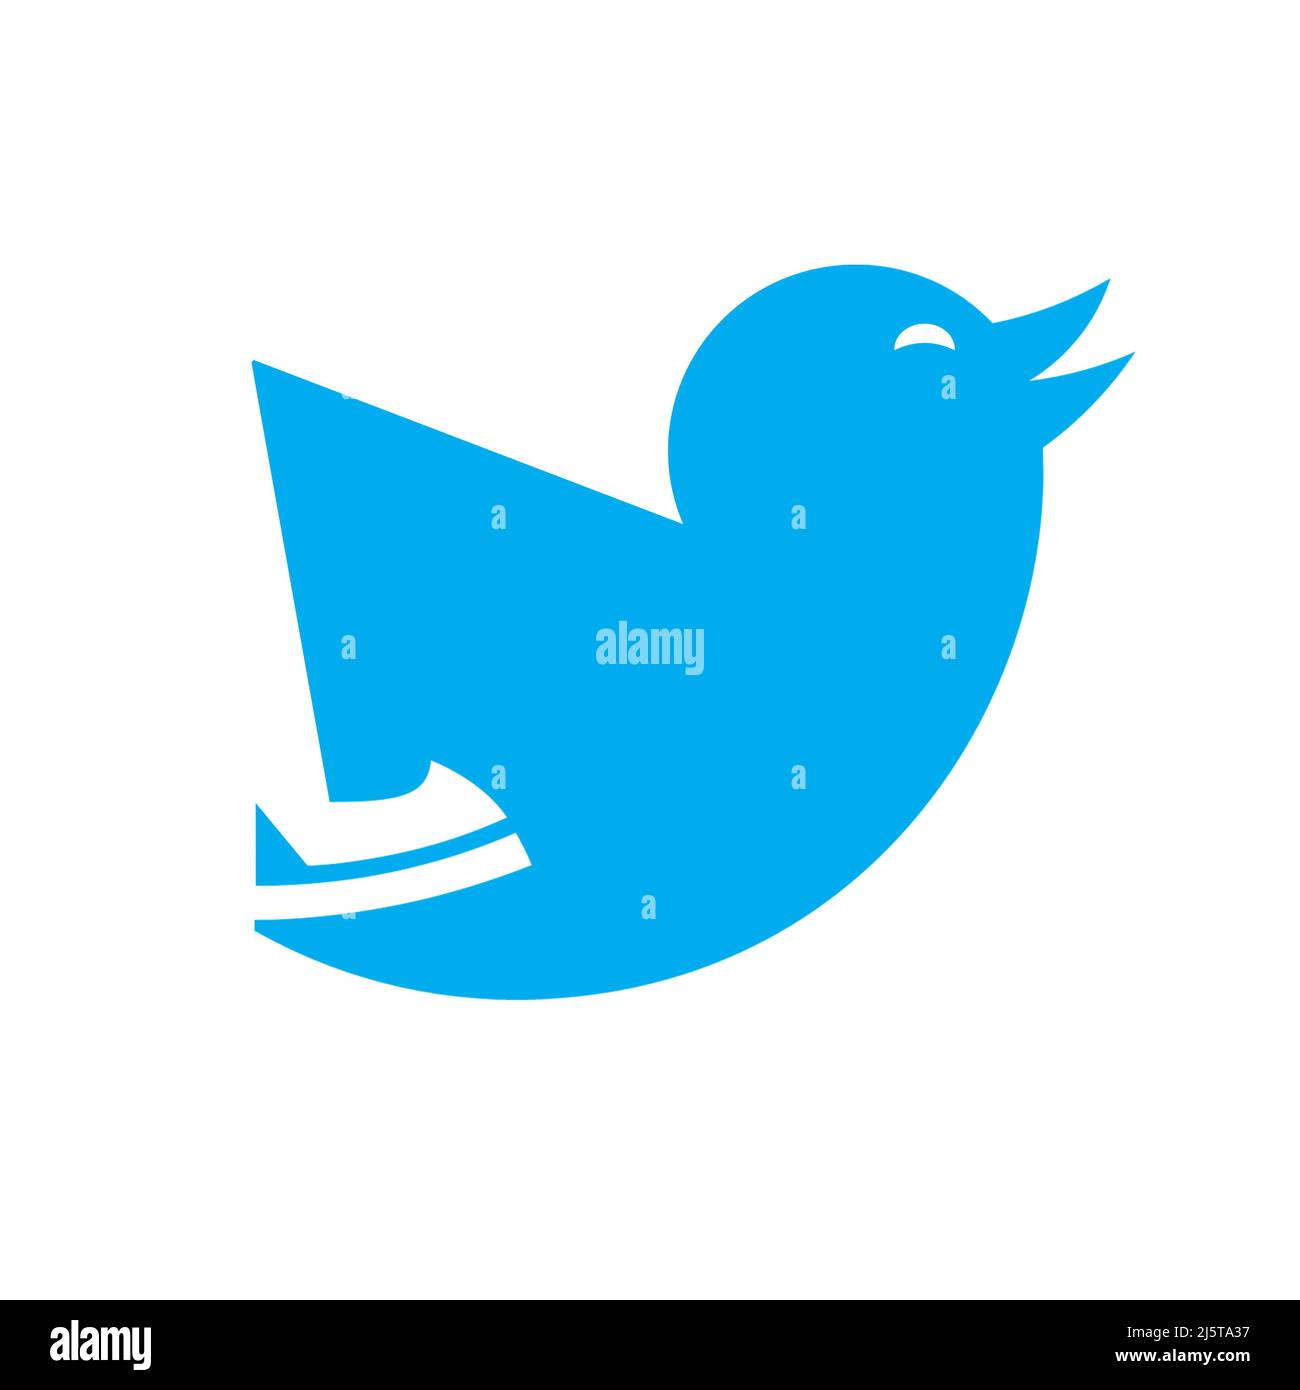 Nuevo logotipo del concepto de twitter tras la adquisición de Elon Musk de la empresa twitter. Wroclaw, Polonia, 25 de abril de 2022. Foto de stock